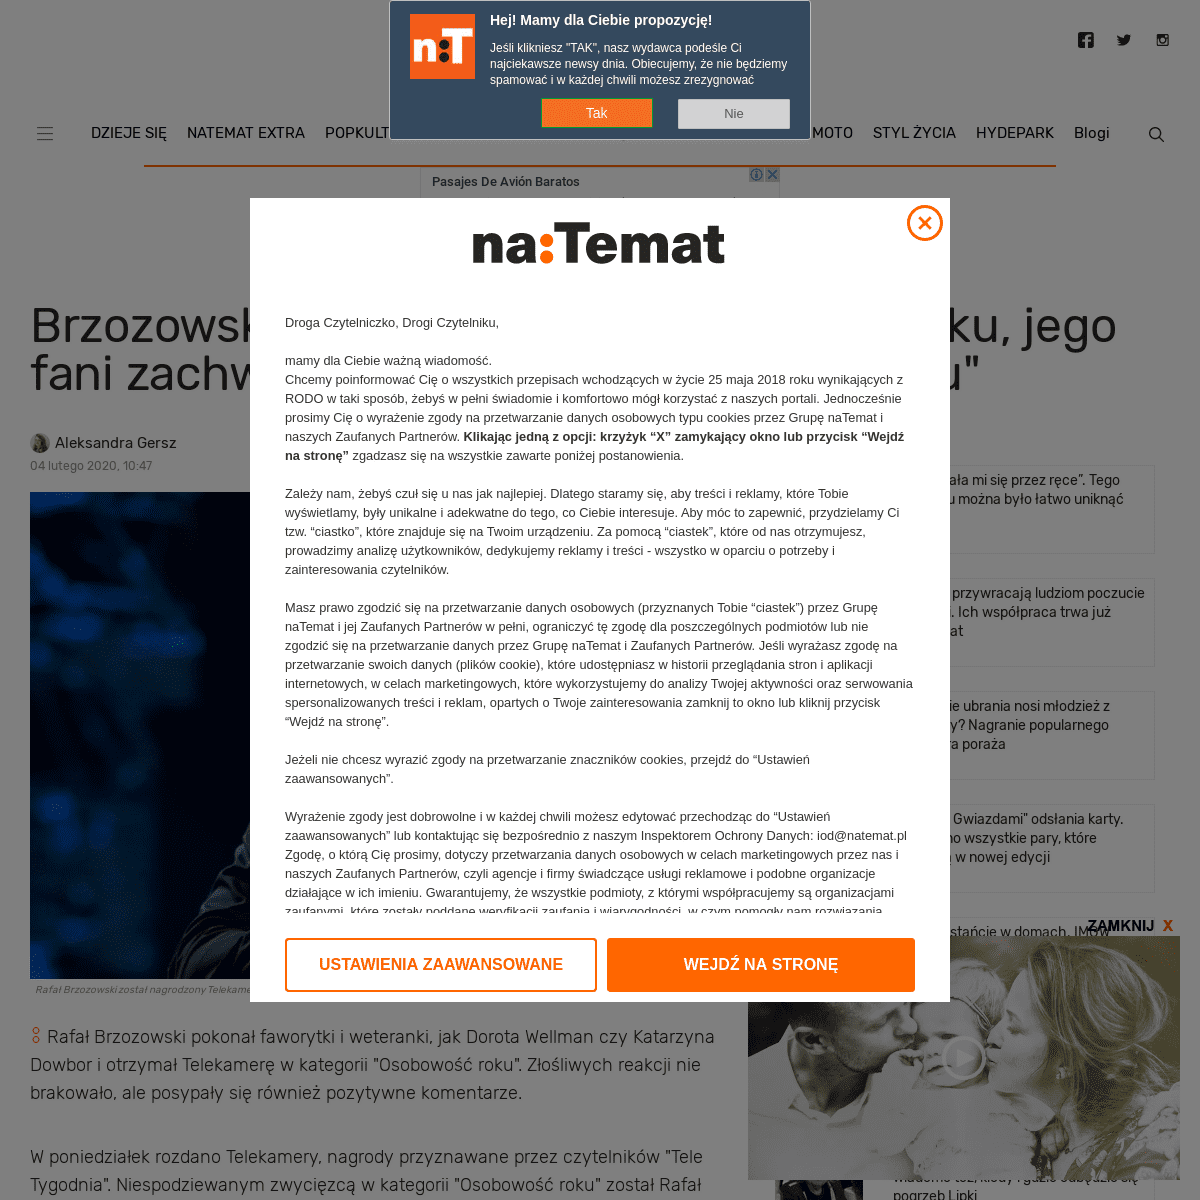 A complete backup of natemat.pl/298481